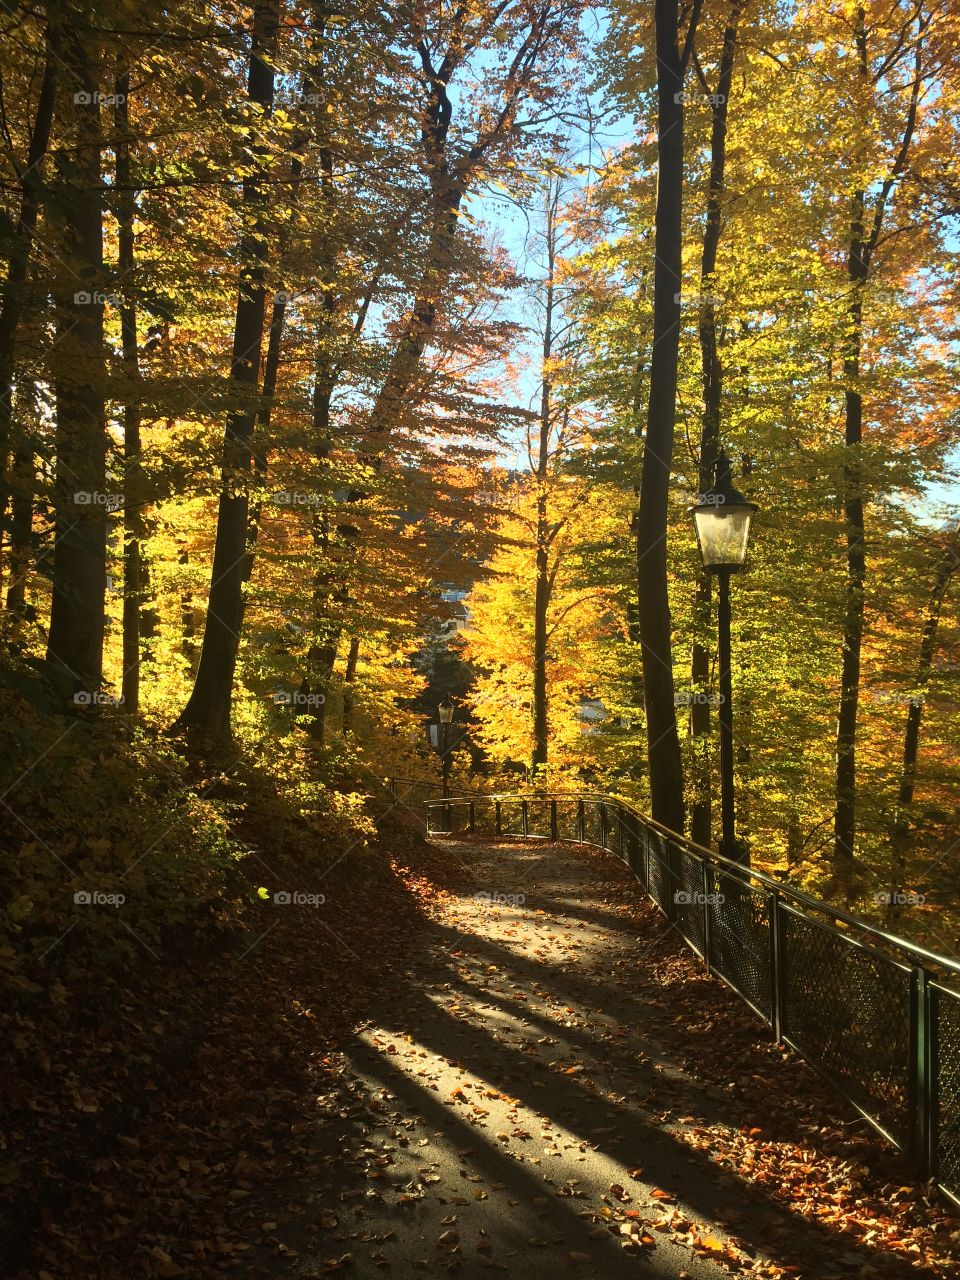 Fall in Innsbruck. Taken on my backpacking trip across Europe in Innsbruck, Austria. 